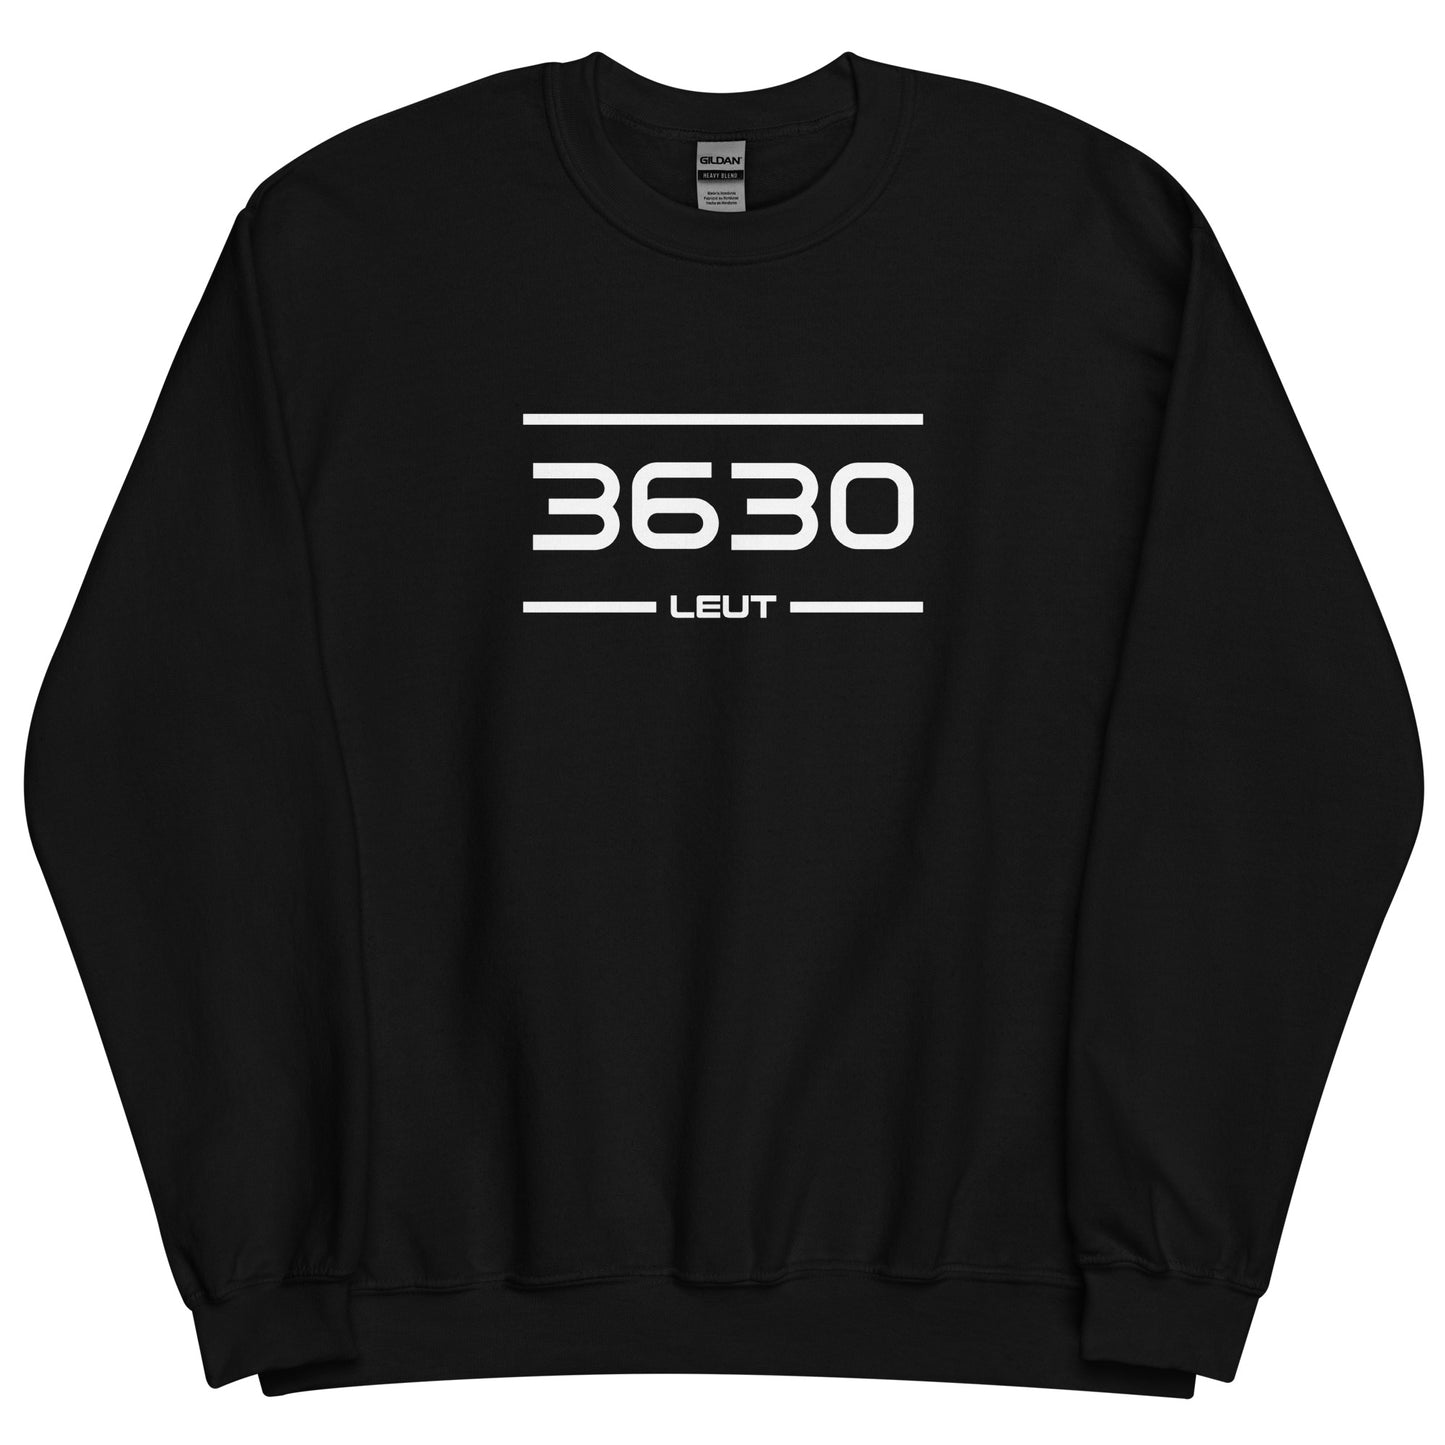 Sweater - 3630 - Leut (M/V)